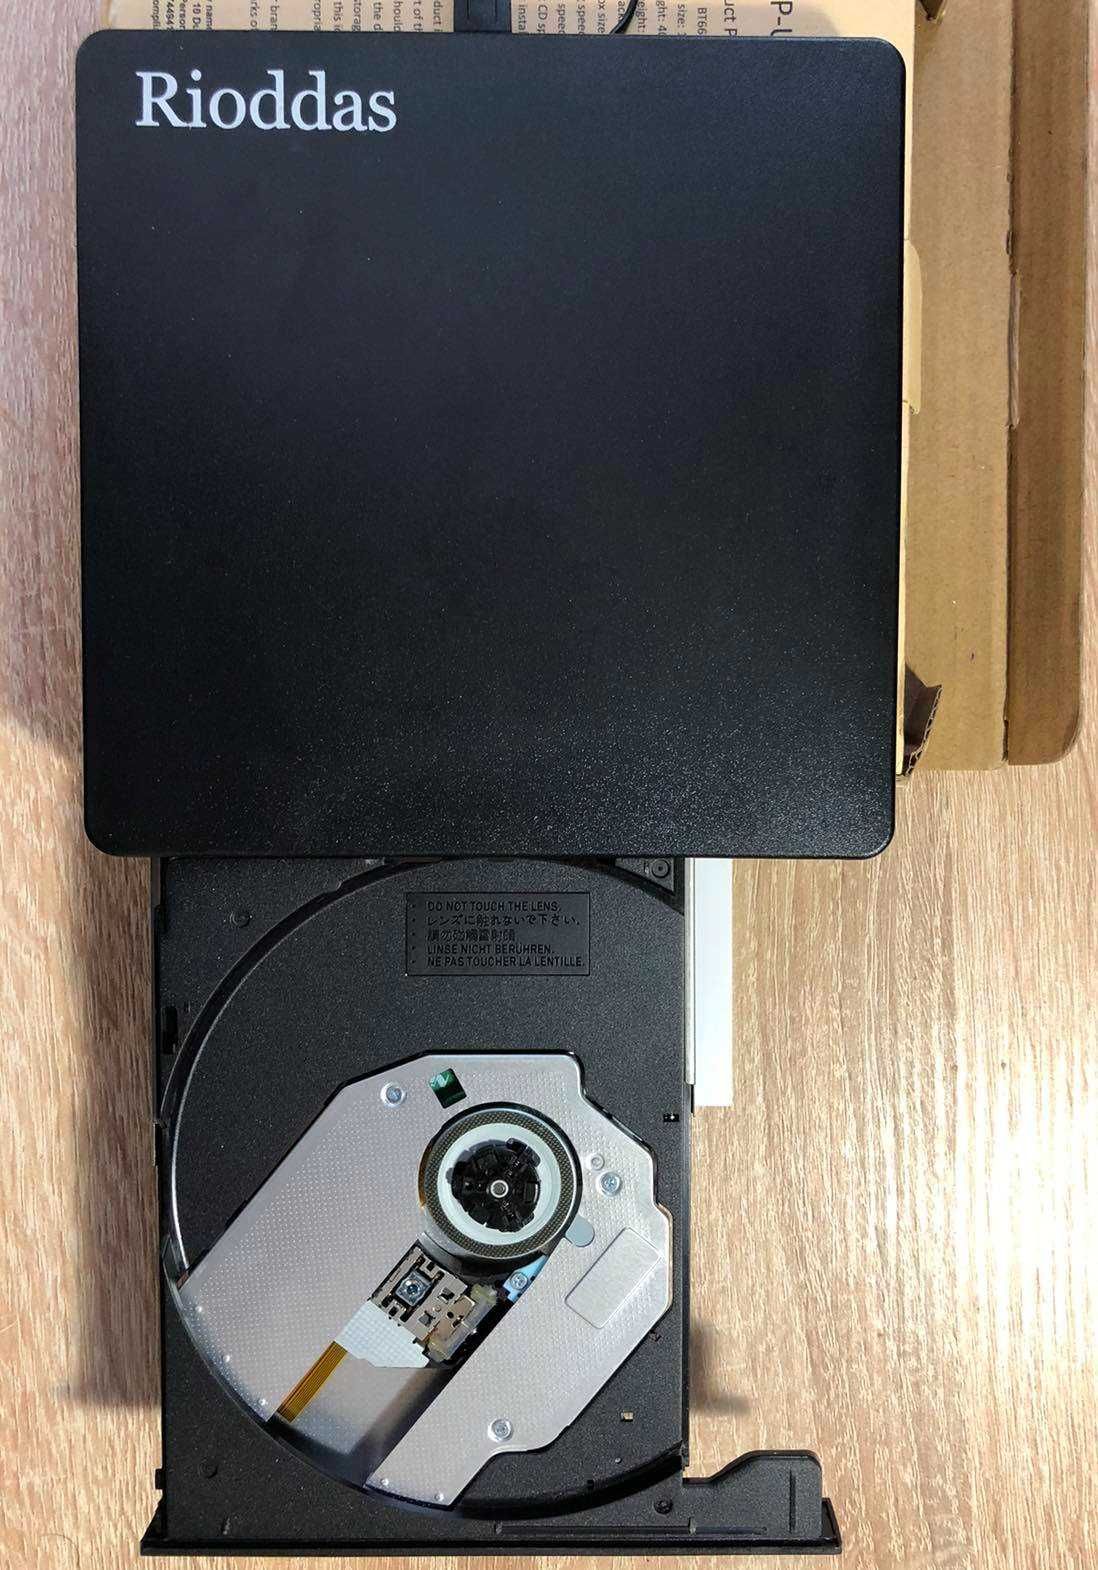 Зовнішній привід компакт-дисків Rioddas BT669. Портативний CD DVD RW